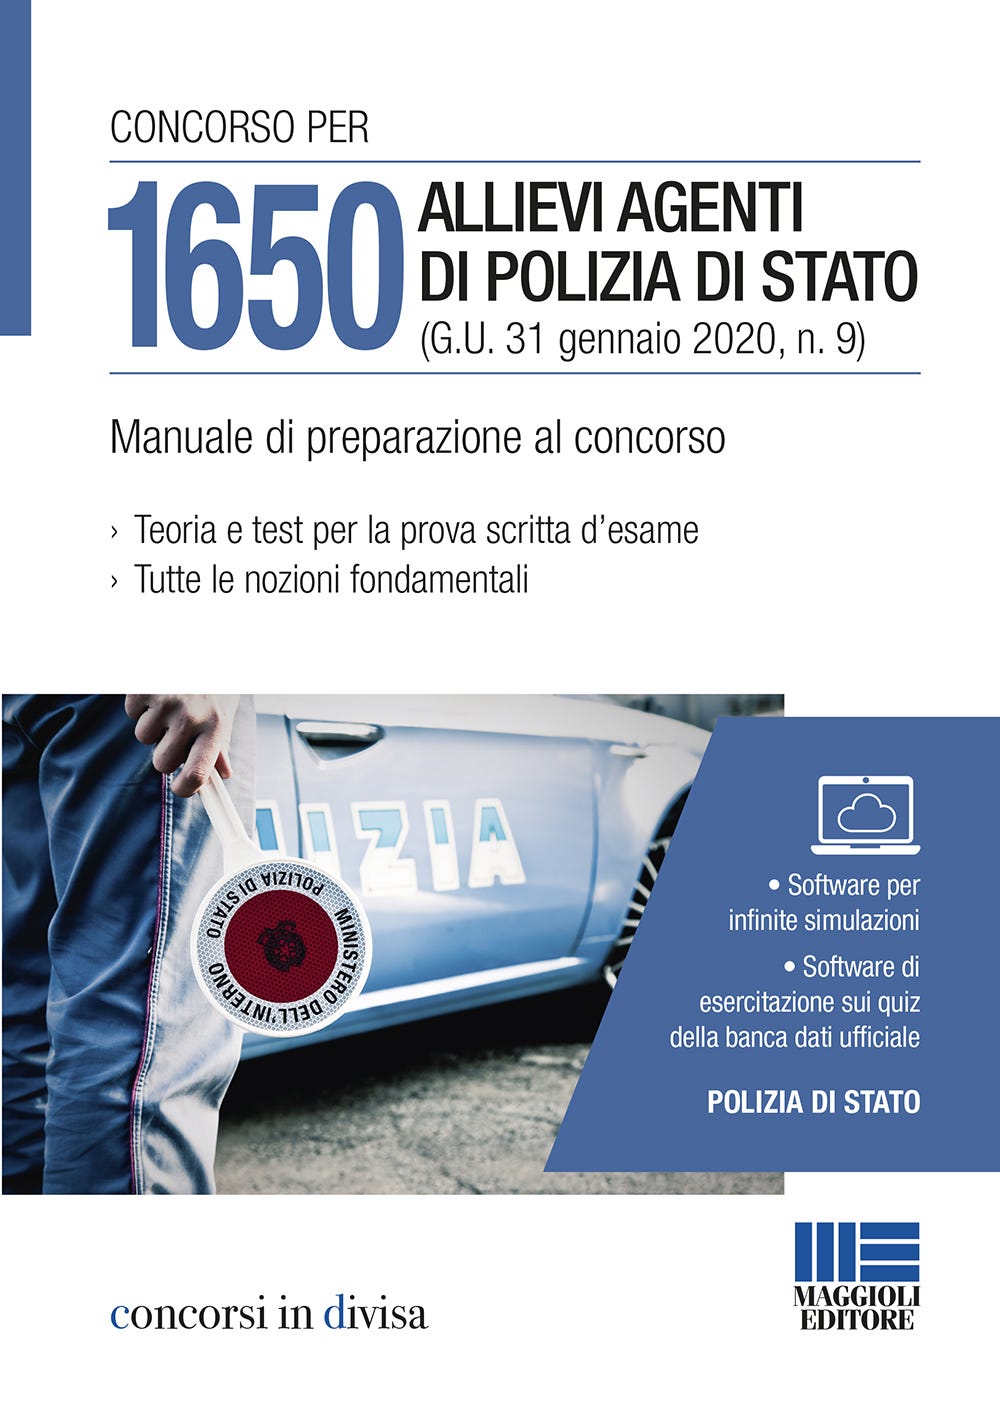 Concorso per 1650 Allievi Agenti di Polizia di Stato (G.U. 31 gennaio 2020, n. 9) - Manuale di preparazione al concorso